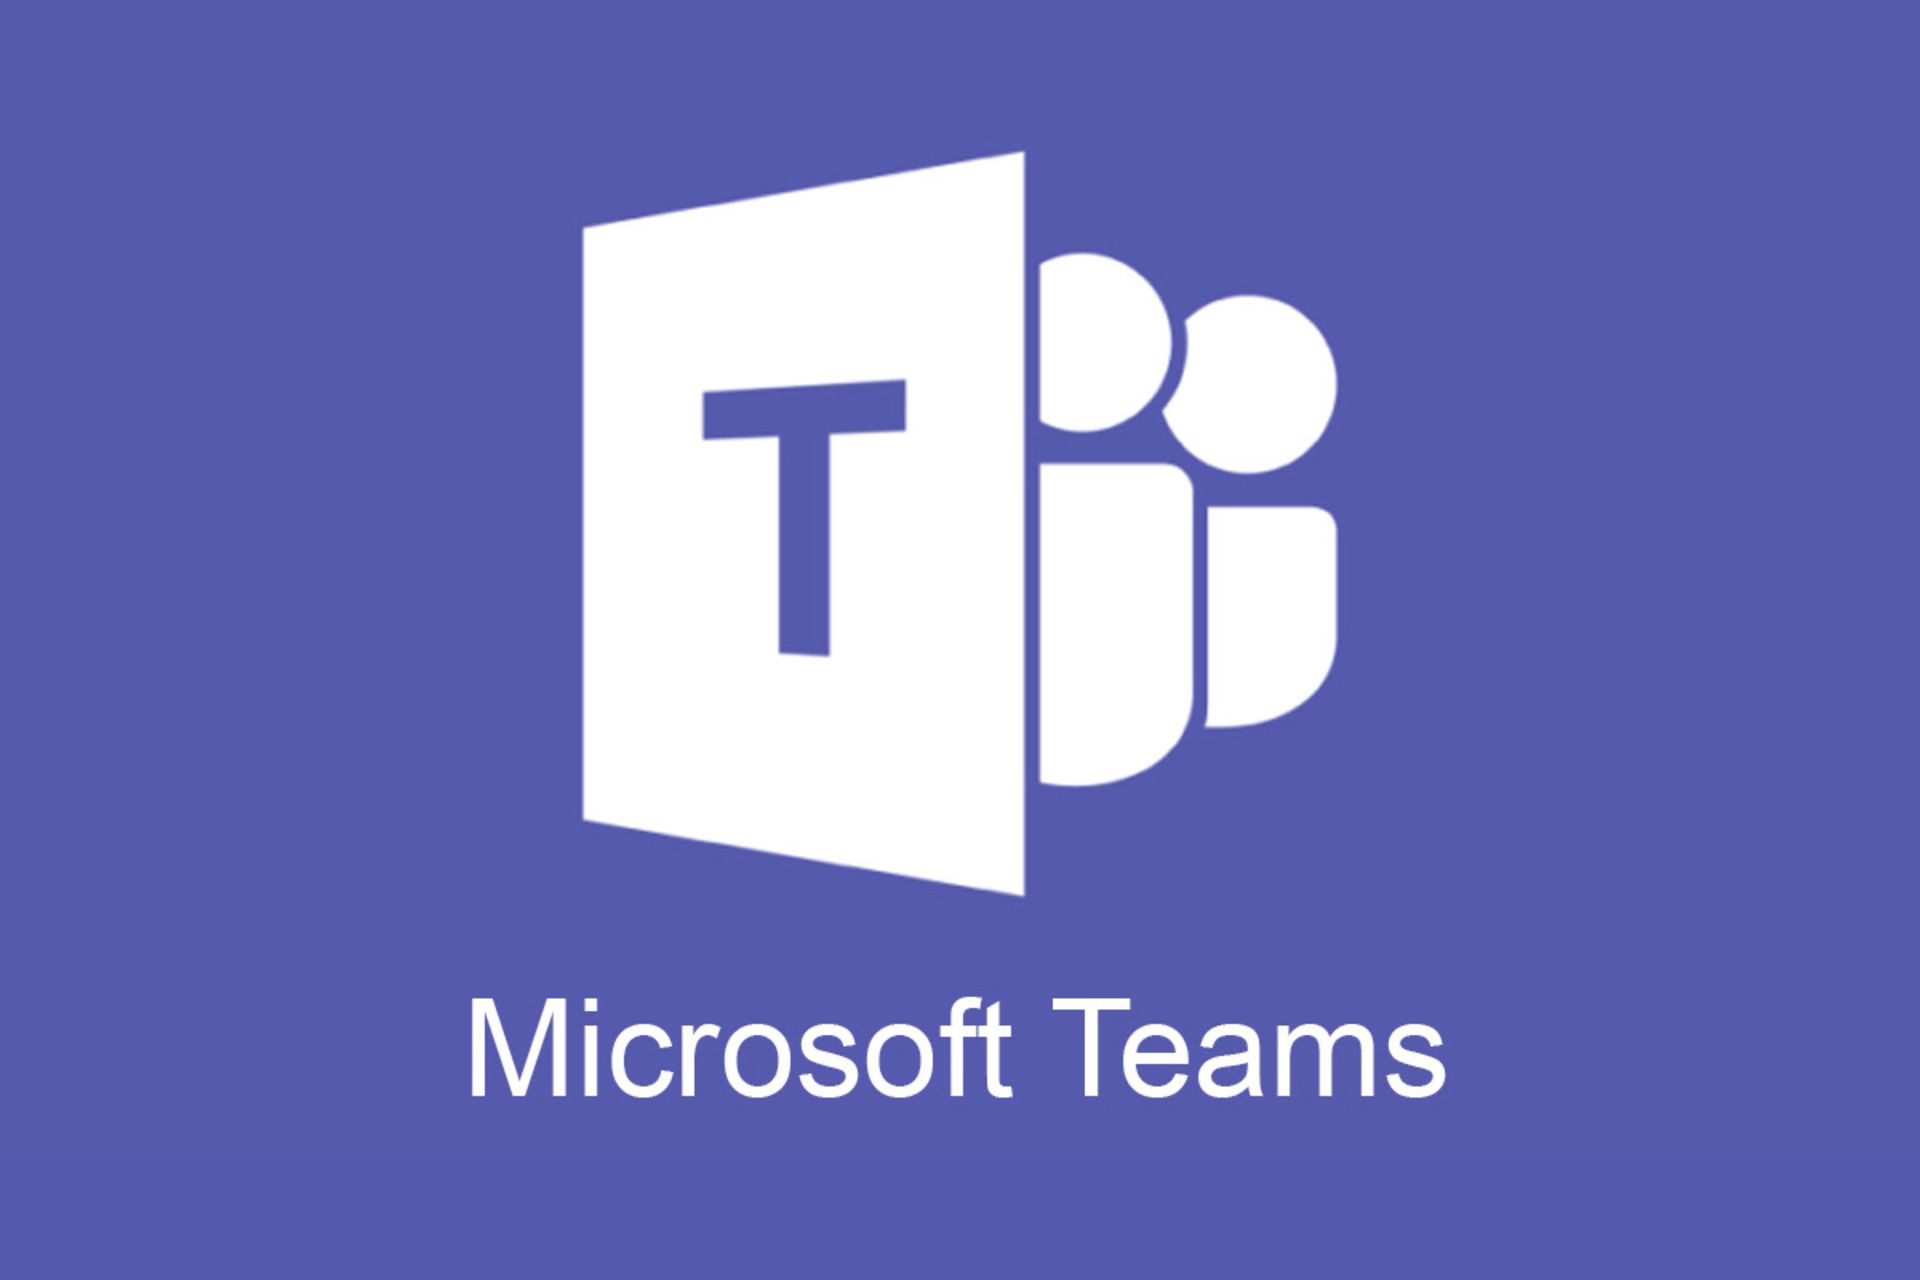 مرجع متخصصين ايران مايكروسافت تيمز / Microsoft Teams